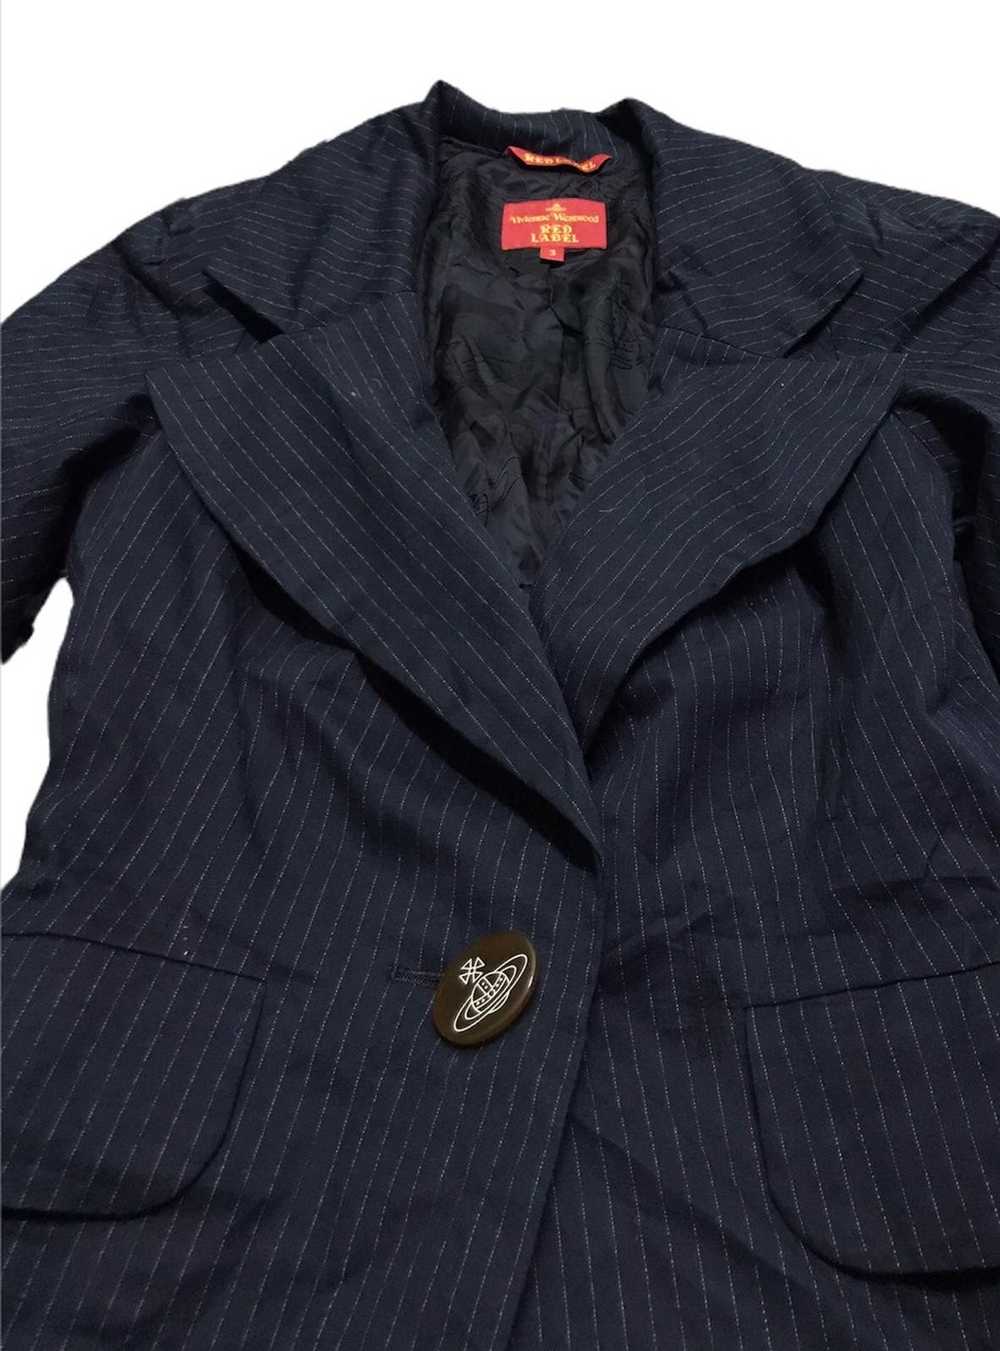 Vivienne Westwood Vivienne westwood stripe coat - image 3